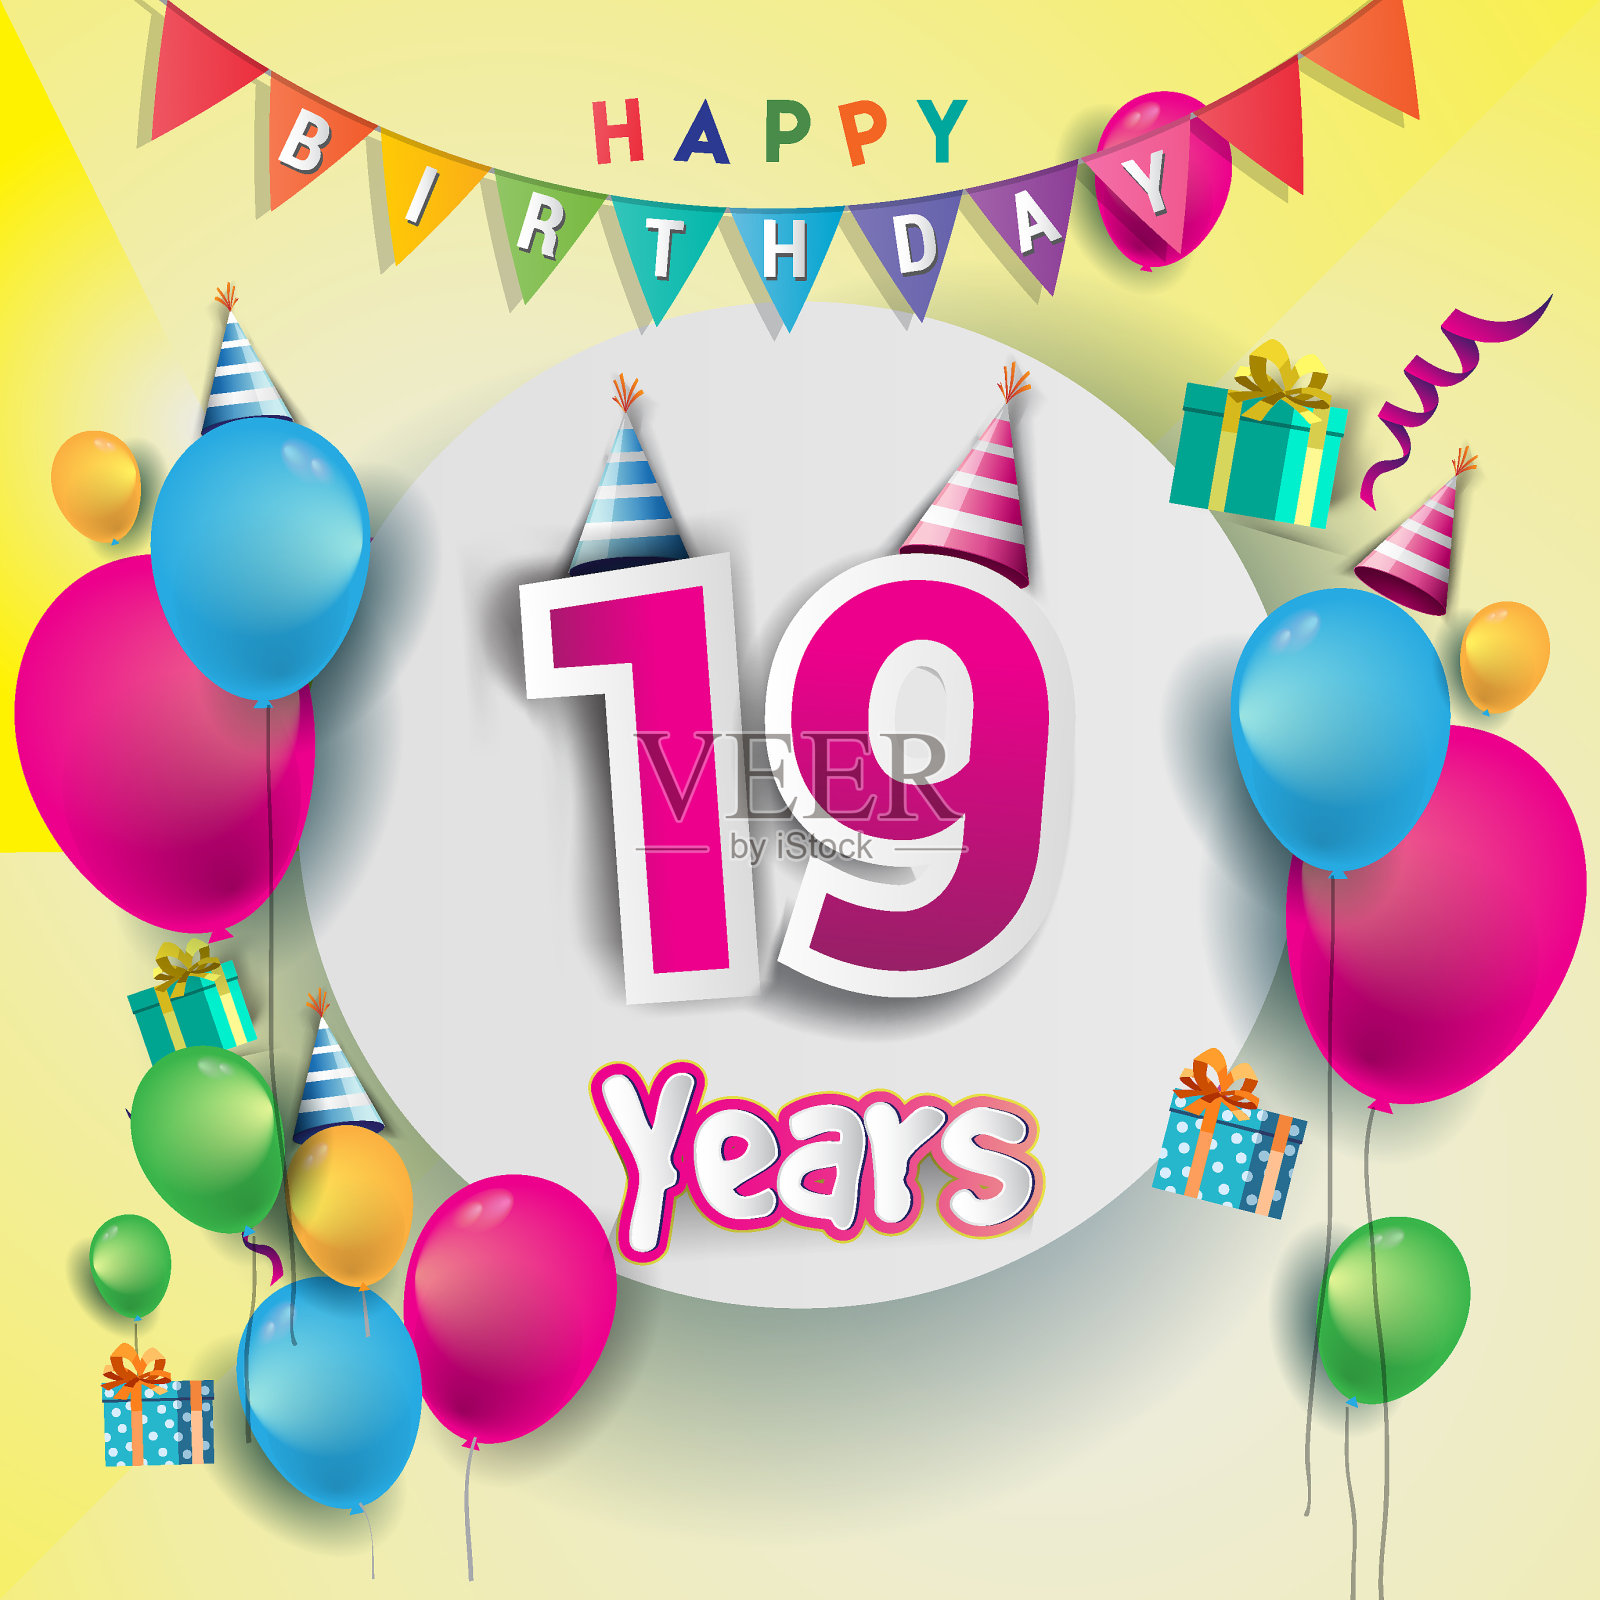 19周年庆典，生日贺卡或贺卡设计与礼品盒和气球，彩色矢量元素为周年庆典。设计模板素材